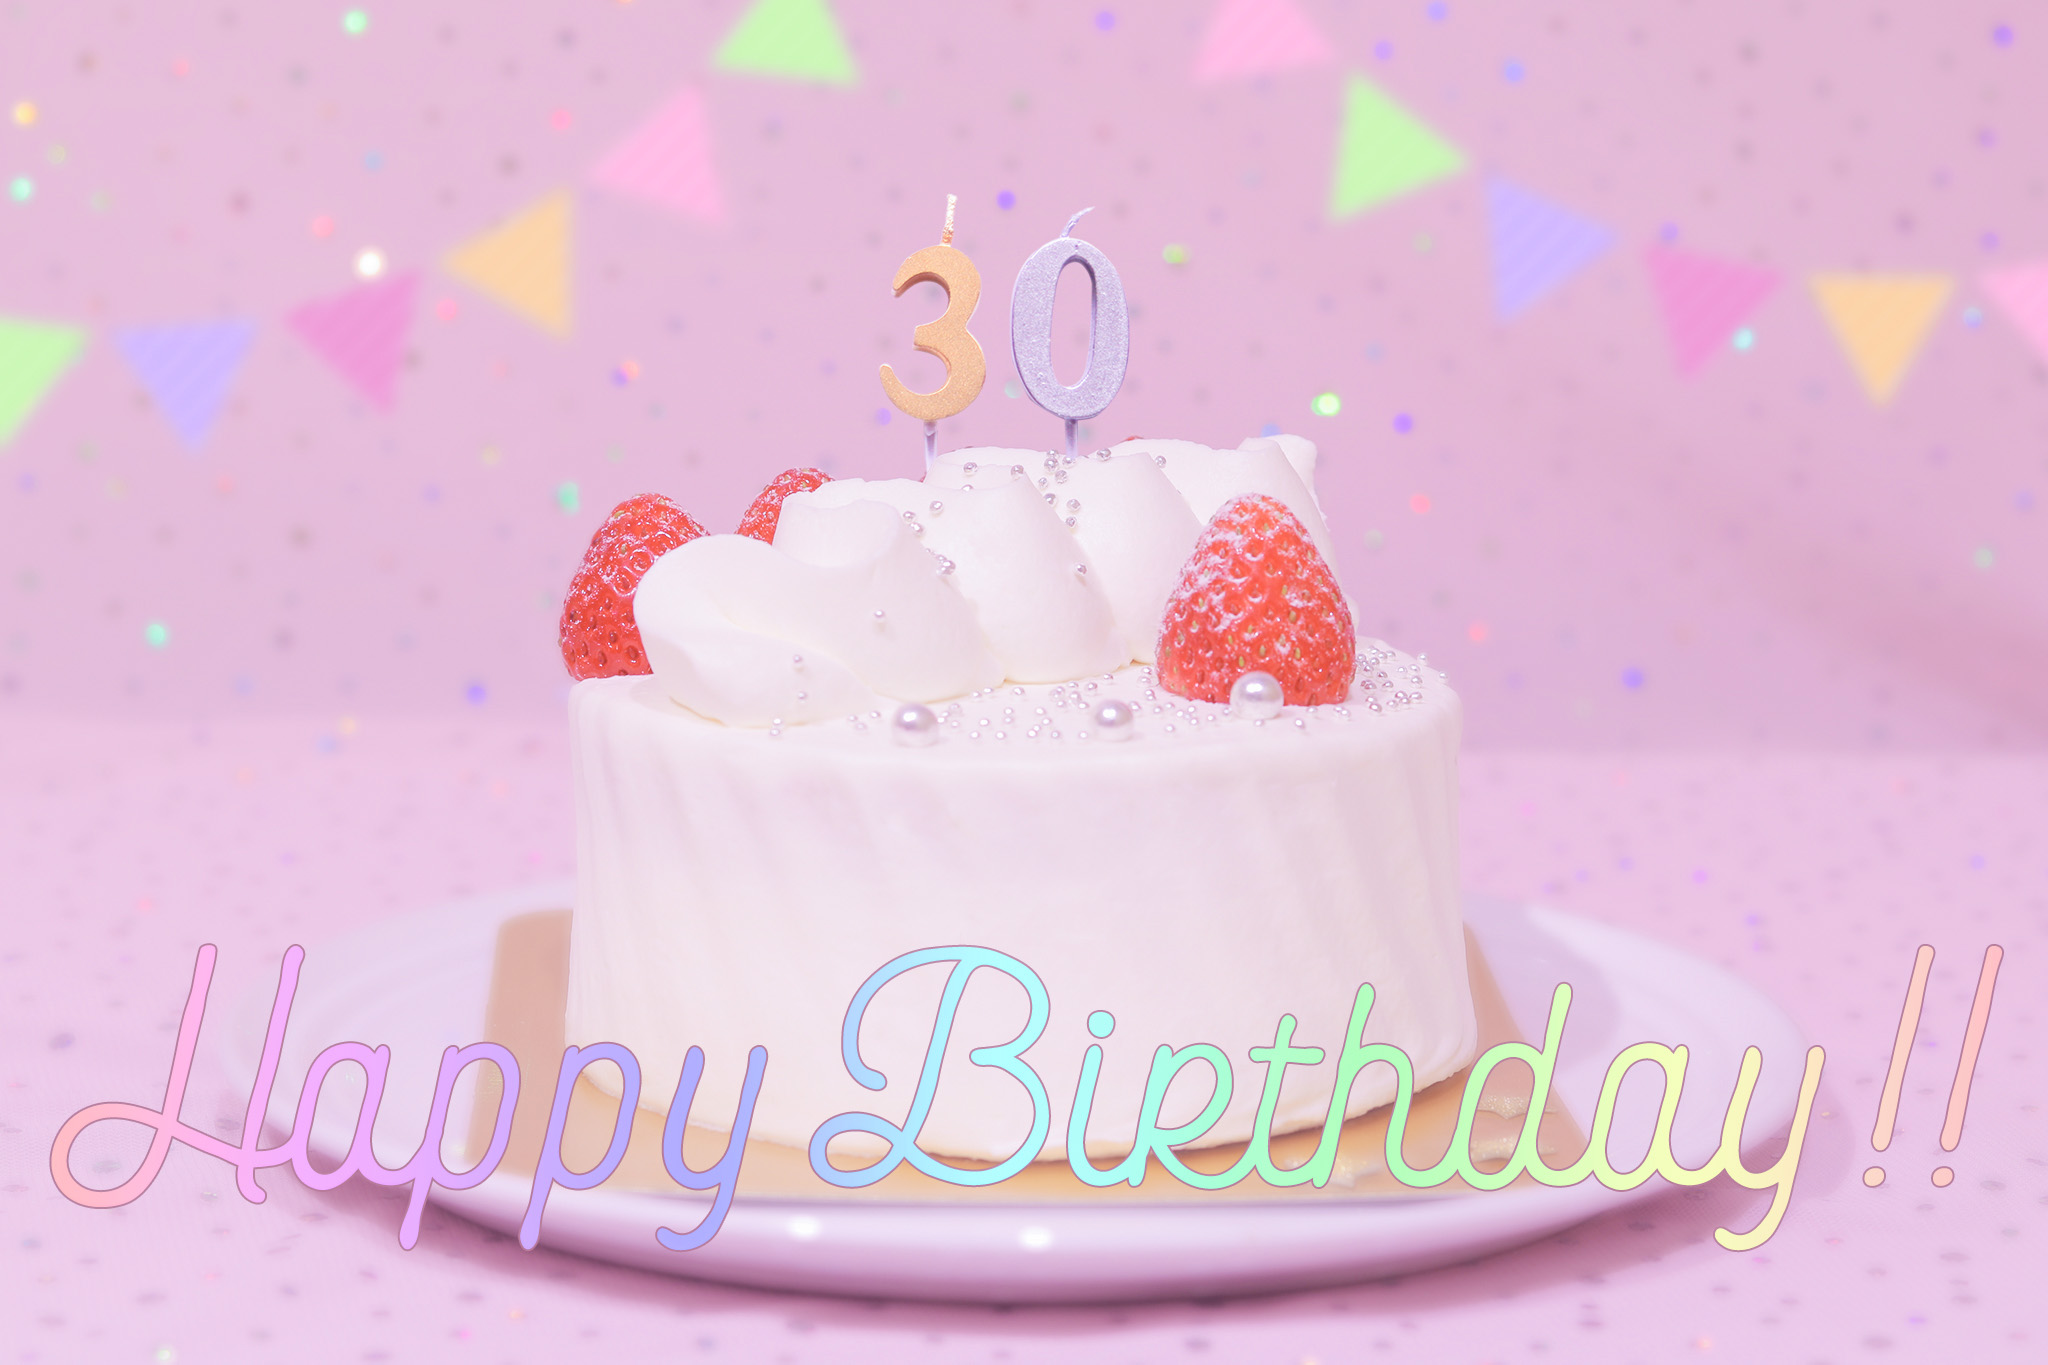 かわいい誕生日画像 ケーキとパステルカラーで可愛くお祝い 30歳編 のフリー画像 おしゃれなフリー写真素材 Girly Drop